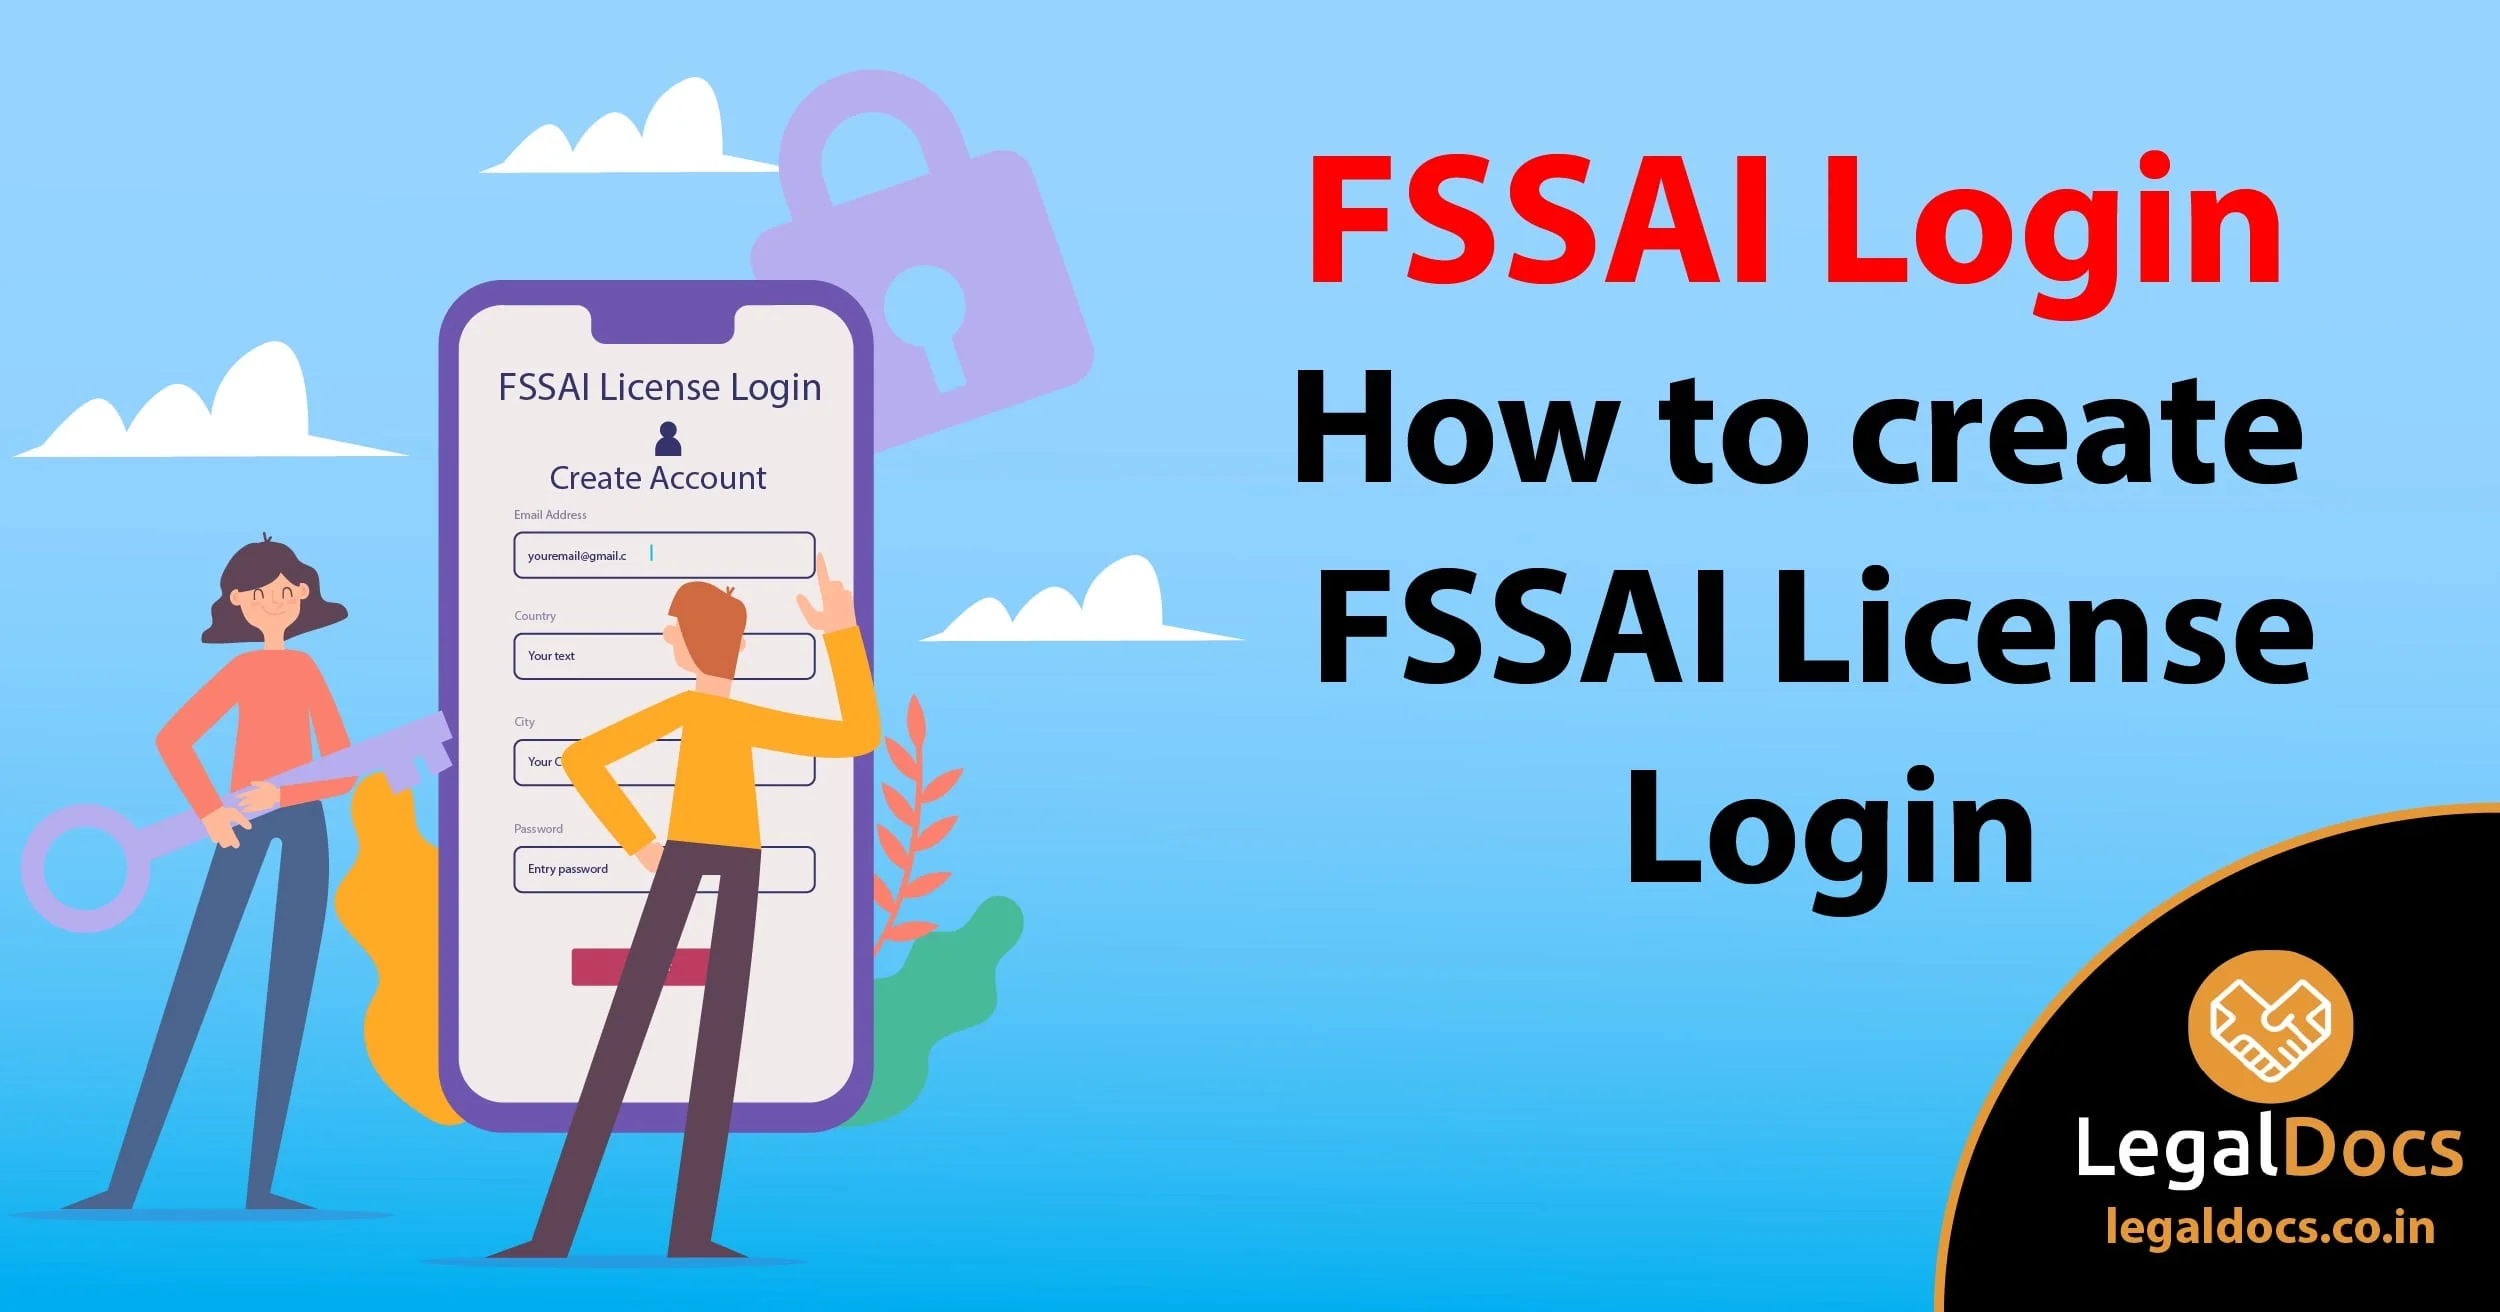 FSSAI Login - How to create FSSAI License Login? - LegalDocs